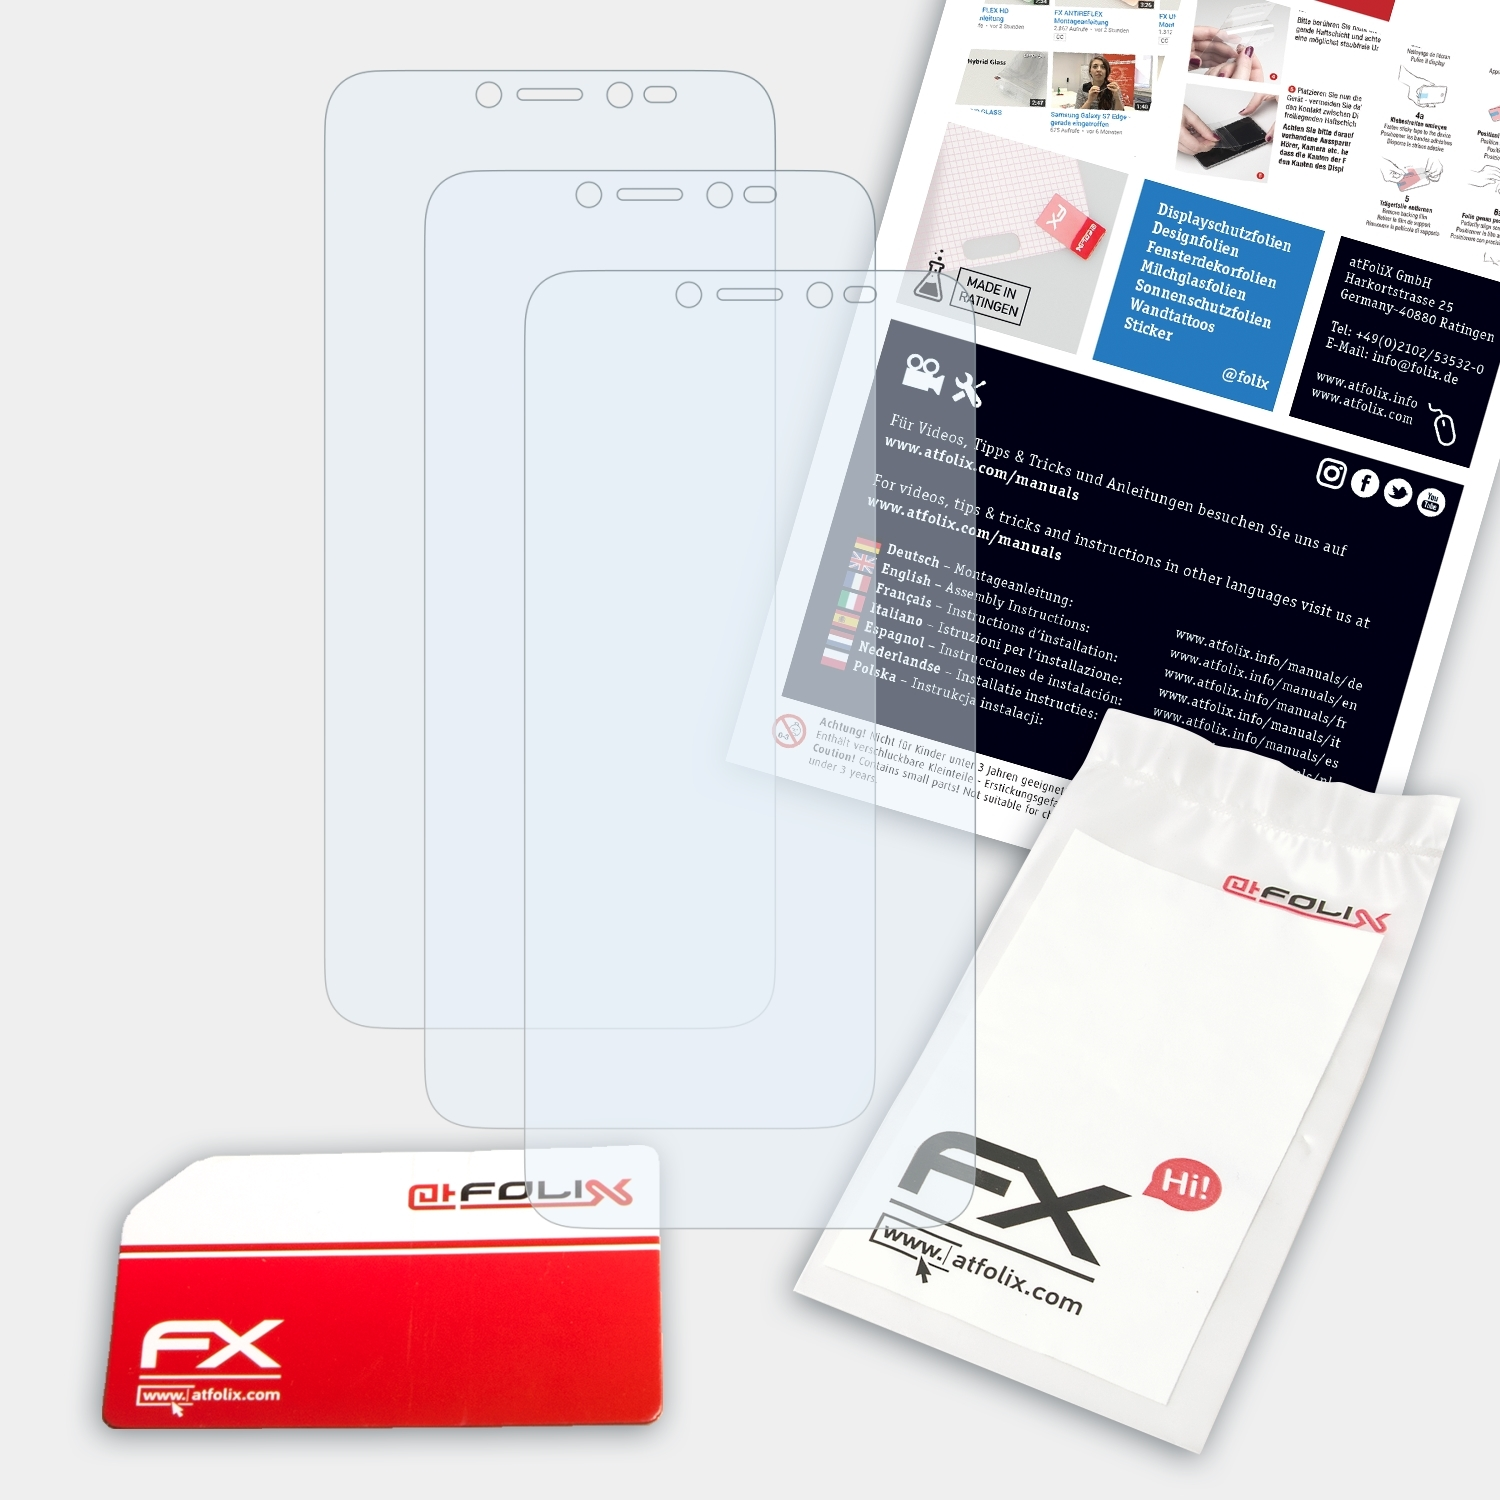 ATFOLIX 3x FX-Clear Alcatel Displayschutz(für 1V)